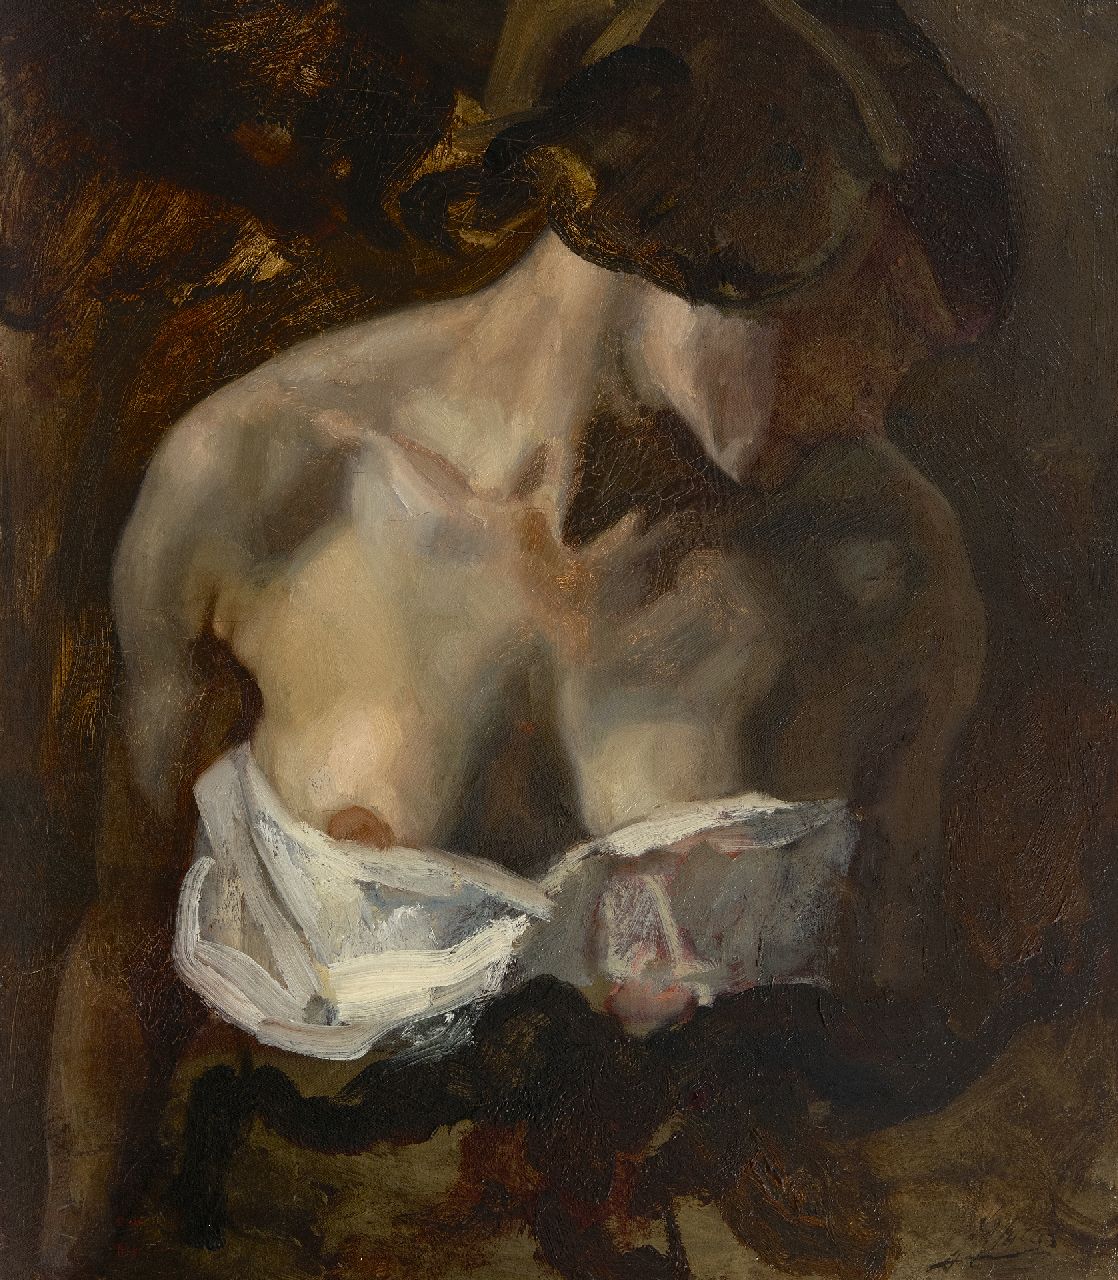 Jurres J.H.  | Johannes Hendricus Jurres, Delilah met ontblote borst (studie voor Samson en Delilah), olieverf op doek 52,3 x 45,5 cm, gesigneerd rechtsonder